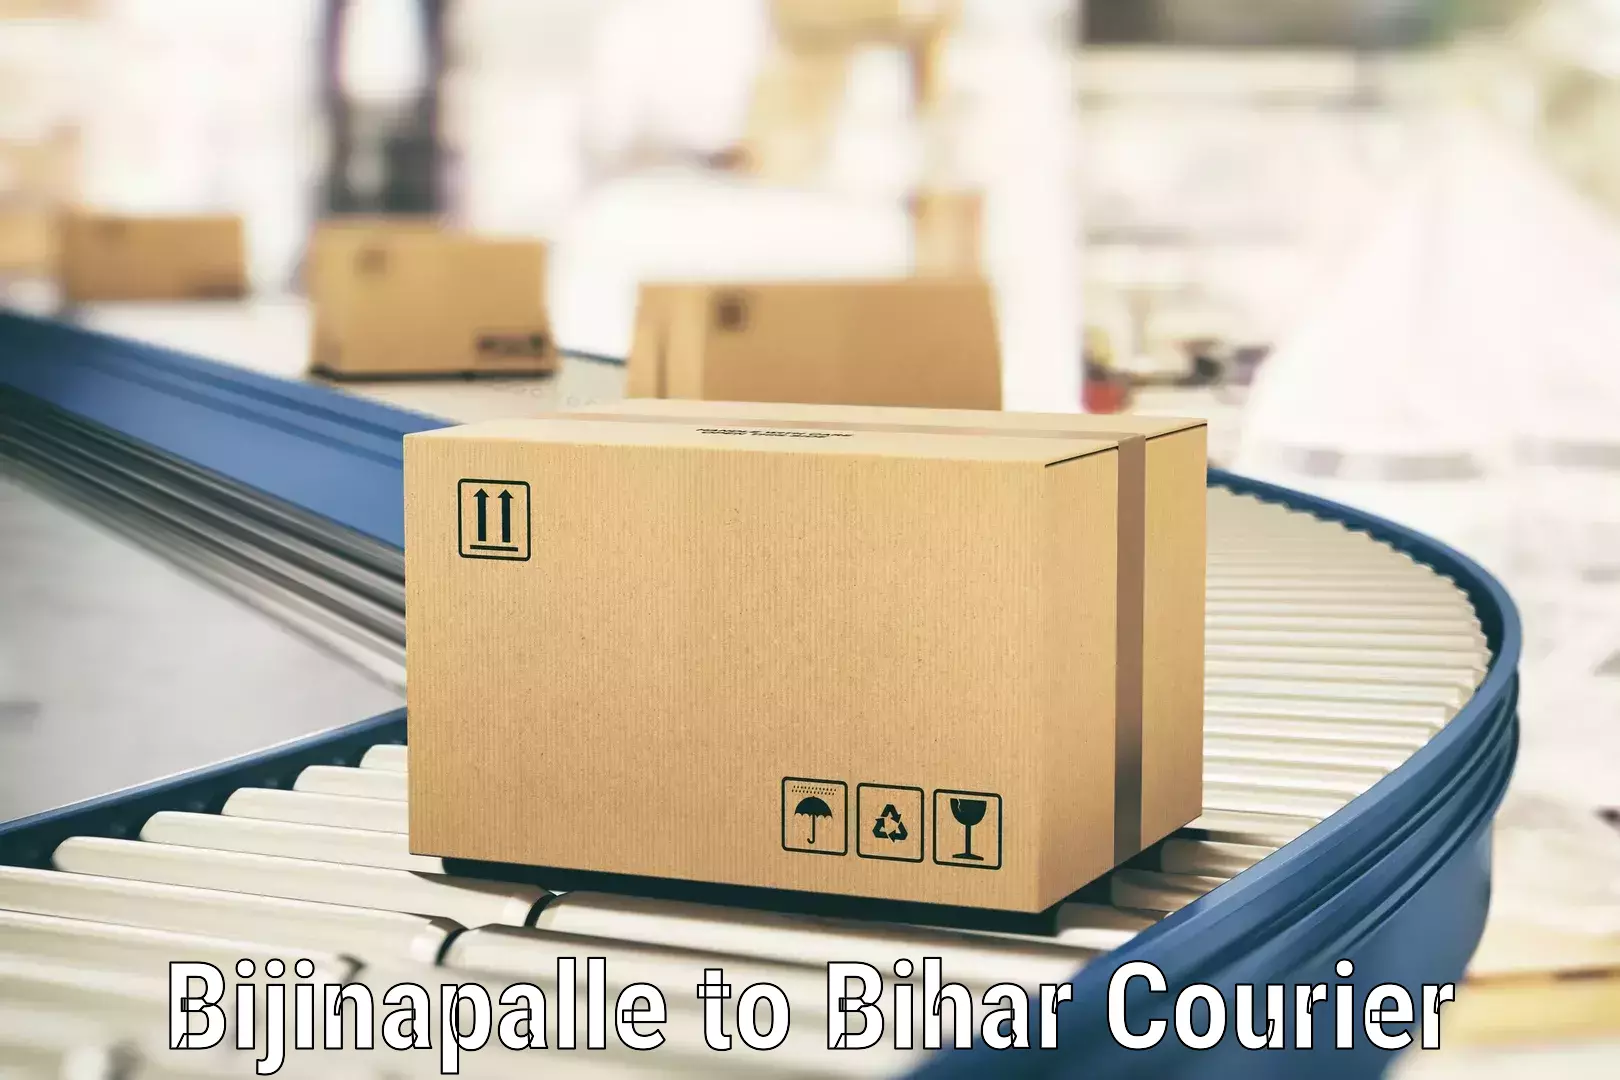 Premium courier solutions Bijinapalle to Bihar